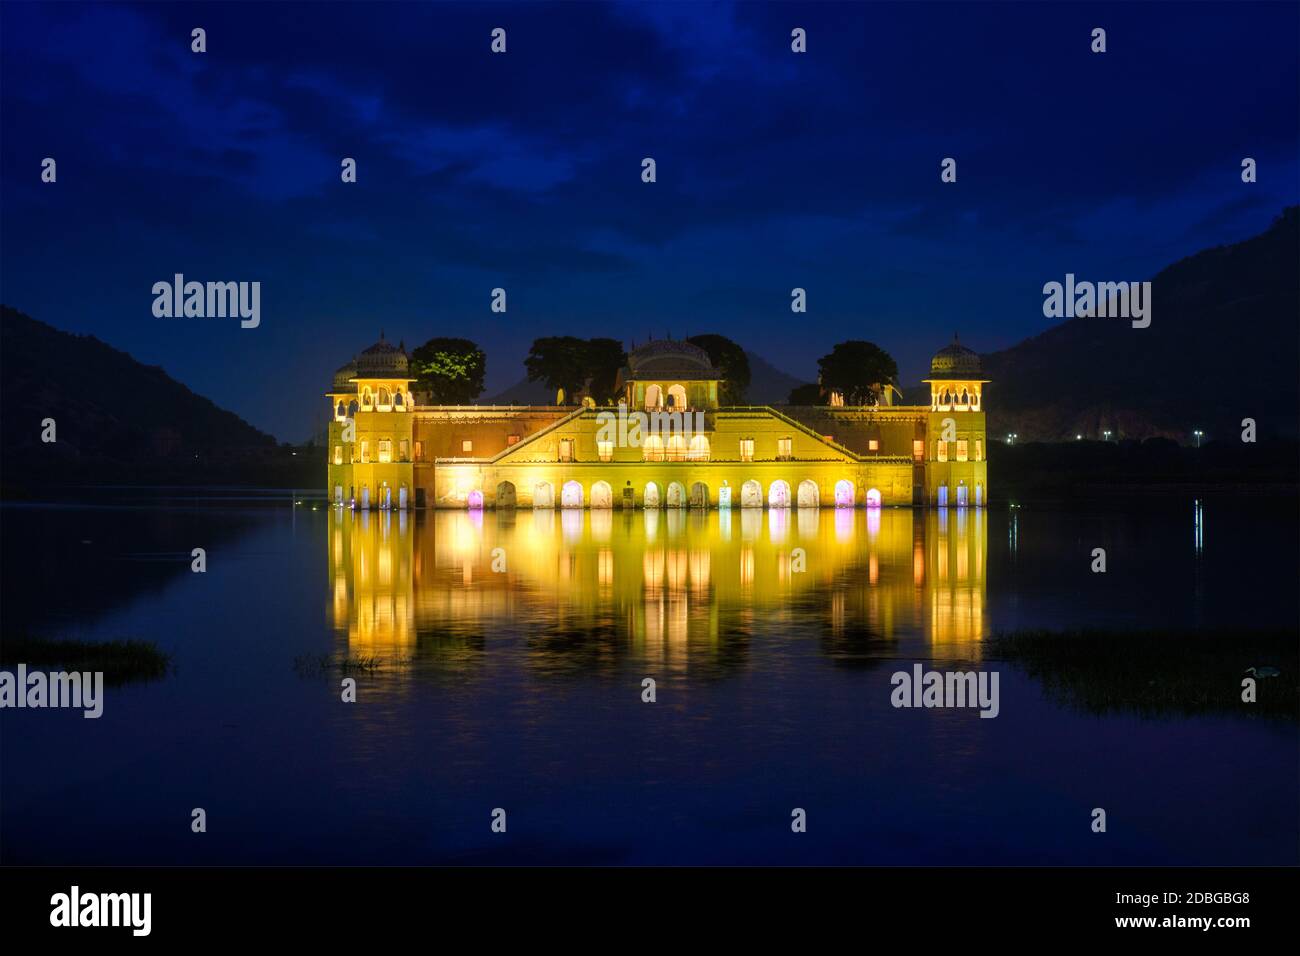 Célèbre site touristique du Rajasthan - Palais de l'eau de Jal Mahal sur le lac de Man Sagar dans la soirée au crépuscule. Jaipur, Rajasthan, Inde Banque D'Images